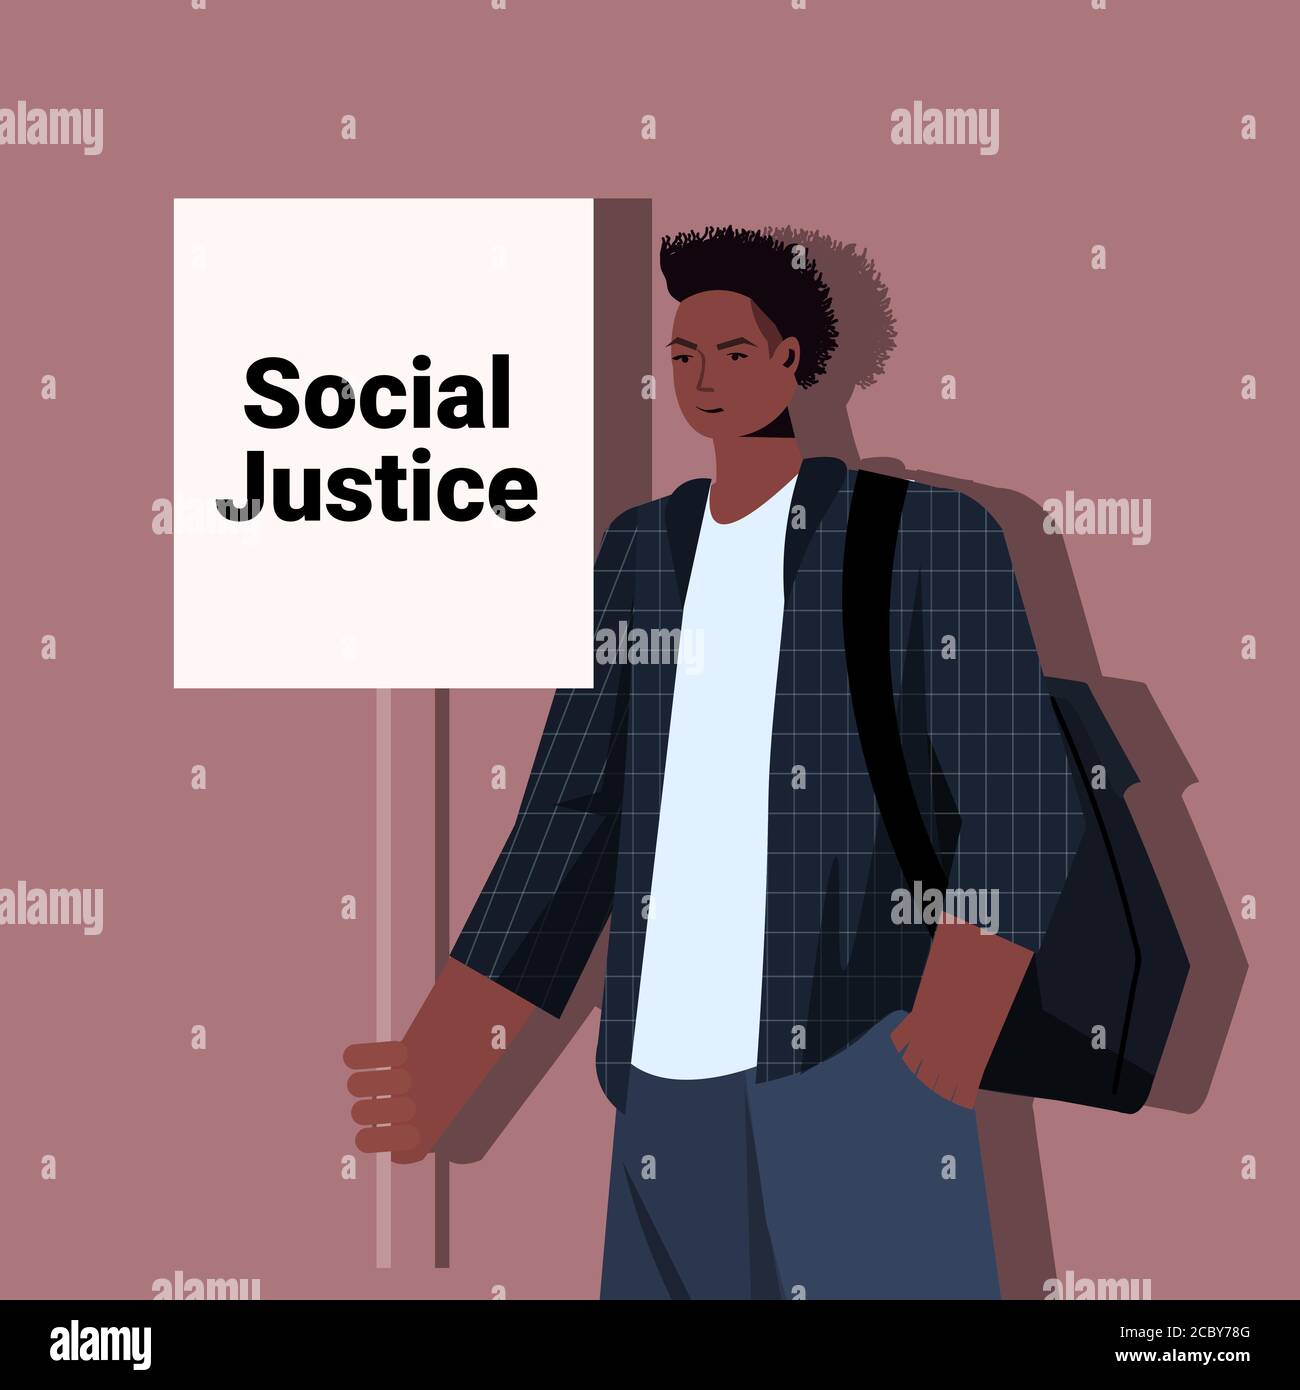 attivista dell'uomo afroamericano che tiene fermo il razzismo manifesto l'uguaglianza razziale giustizia sociale fermare la discriminazione concetto ritratto illustrazione vettoriale Illustrazione Vettoriale